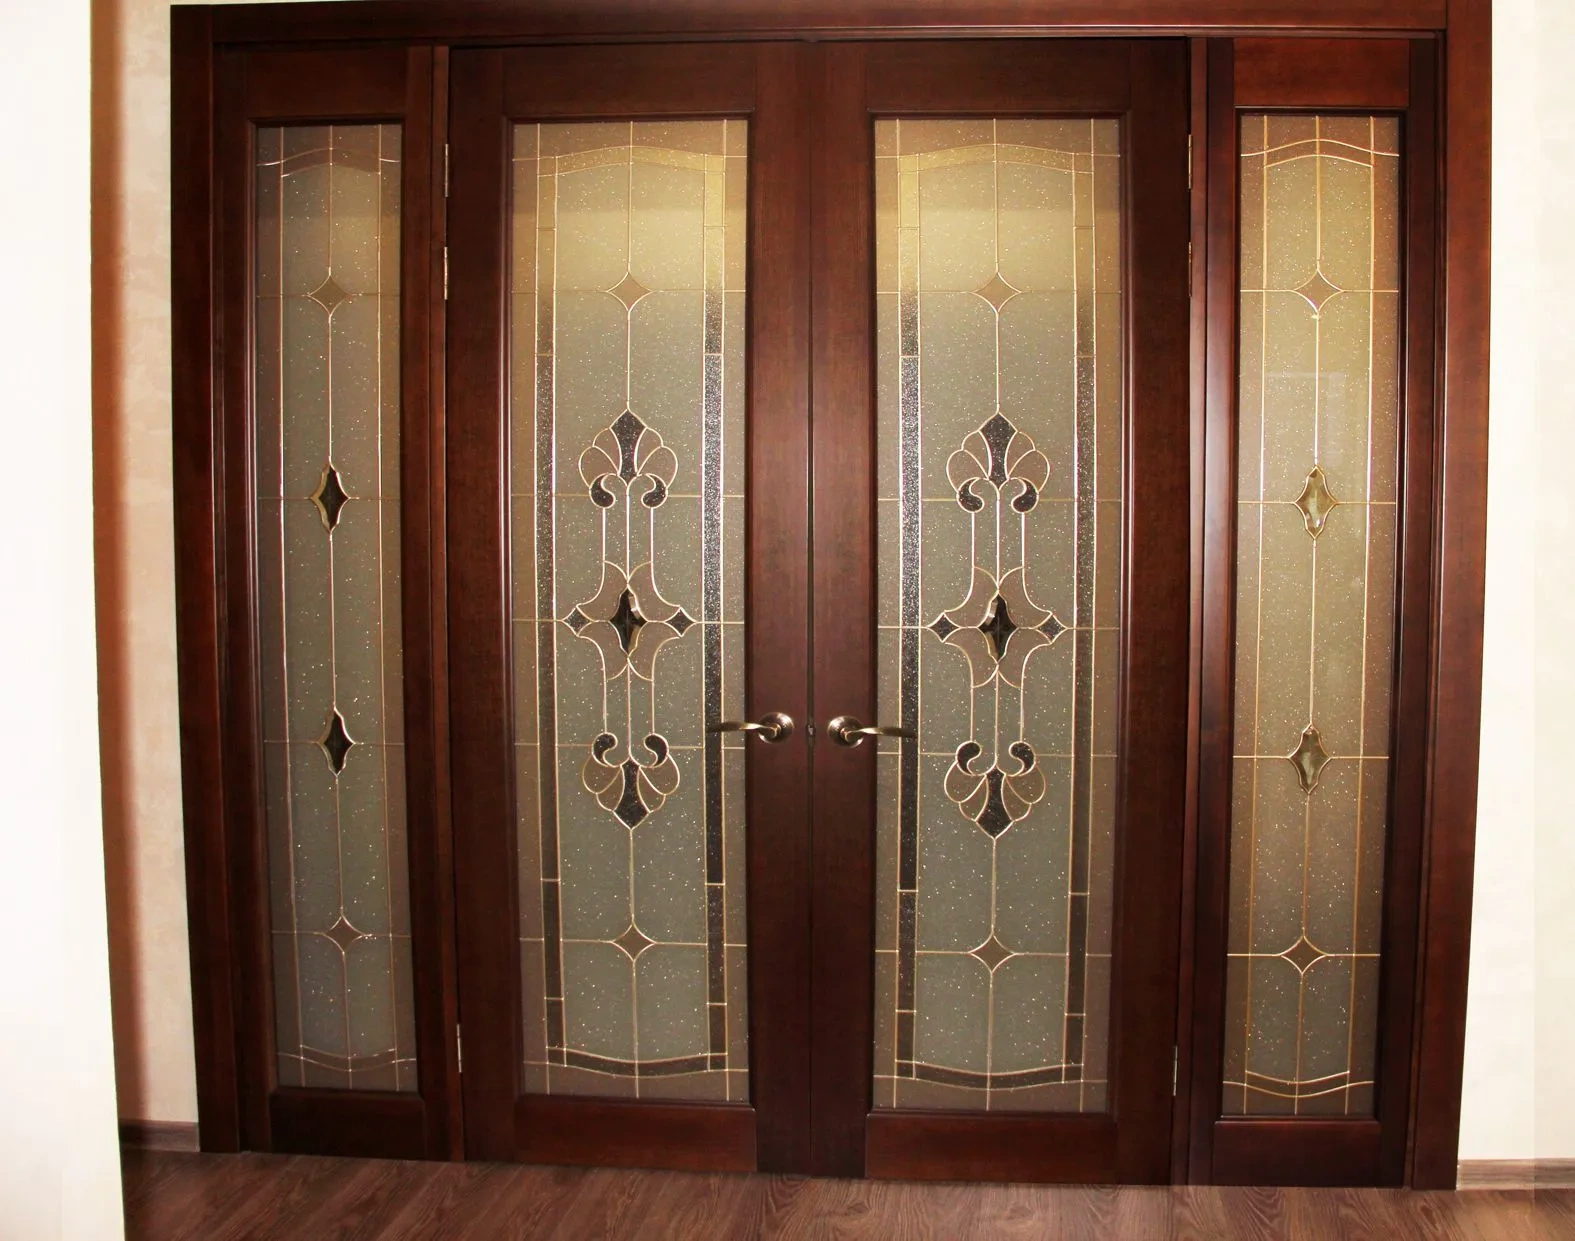 Витражная отделка дверей и дизайн интерьера созданы в едином стиле